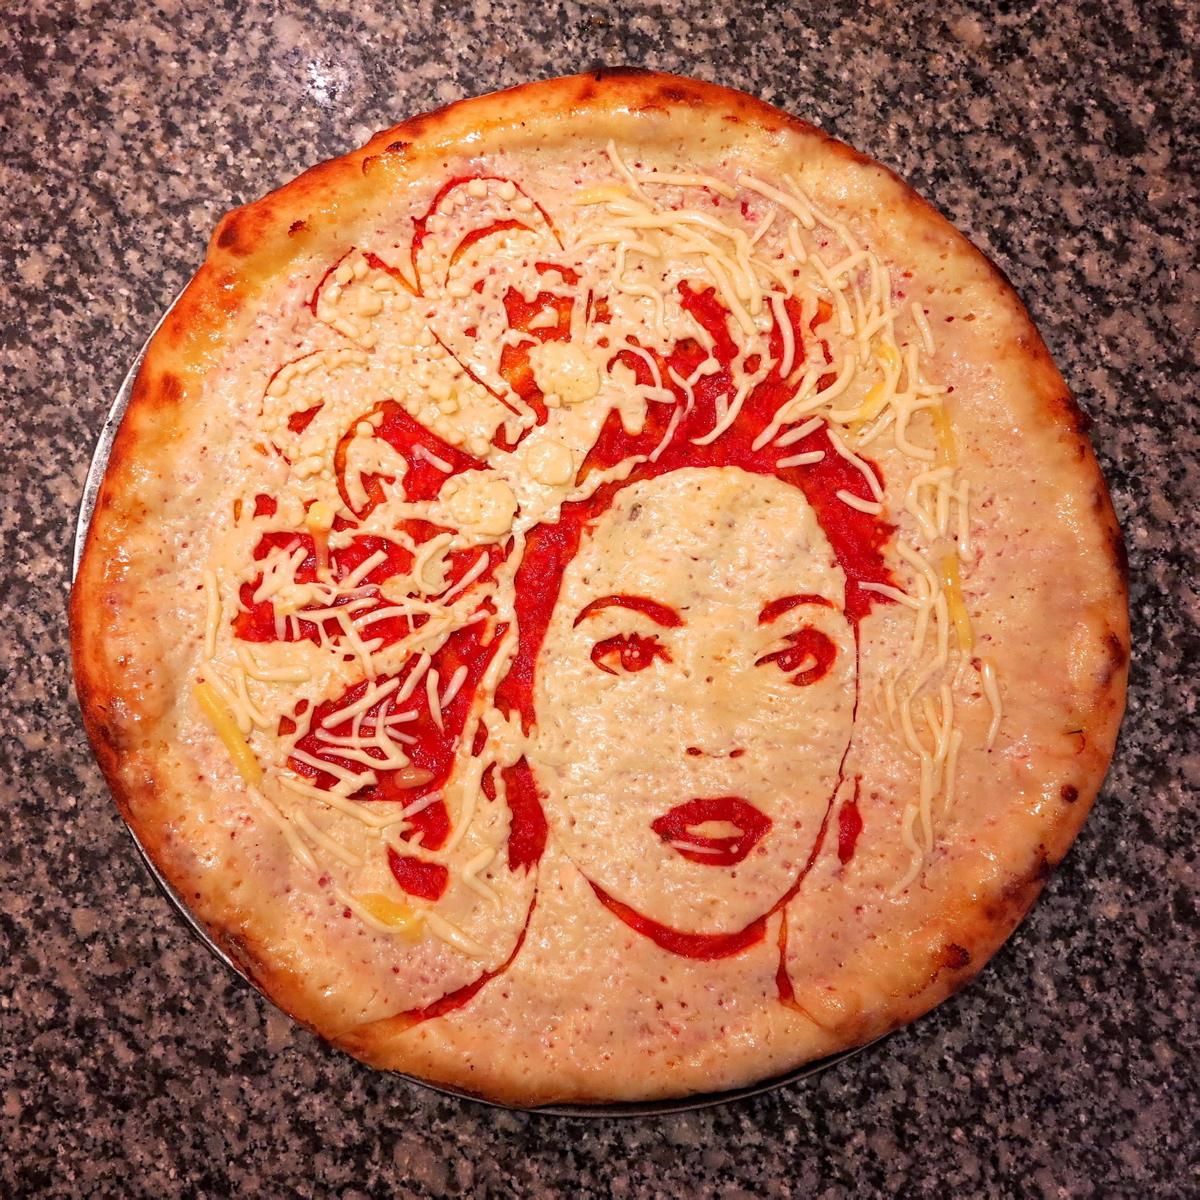 chef conquista instagram con retratos en pizzas beyonce pizza portait